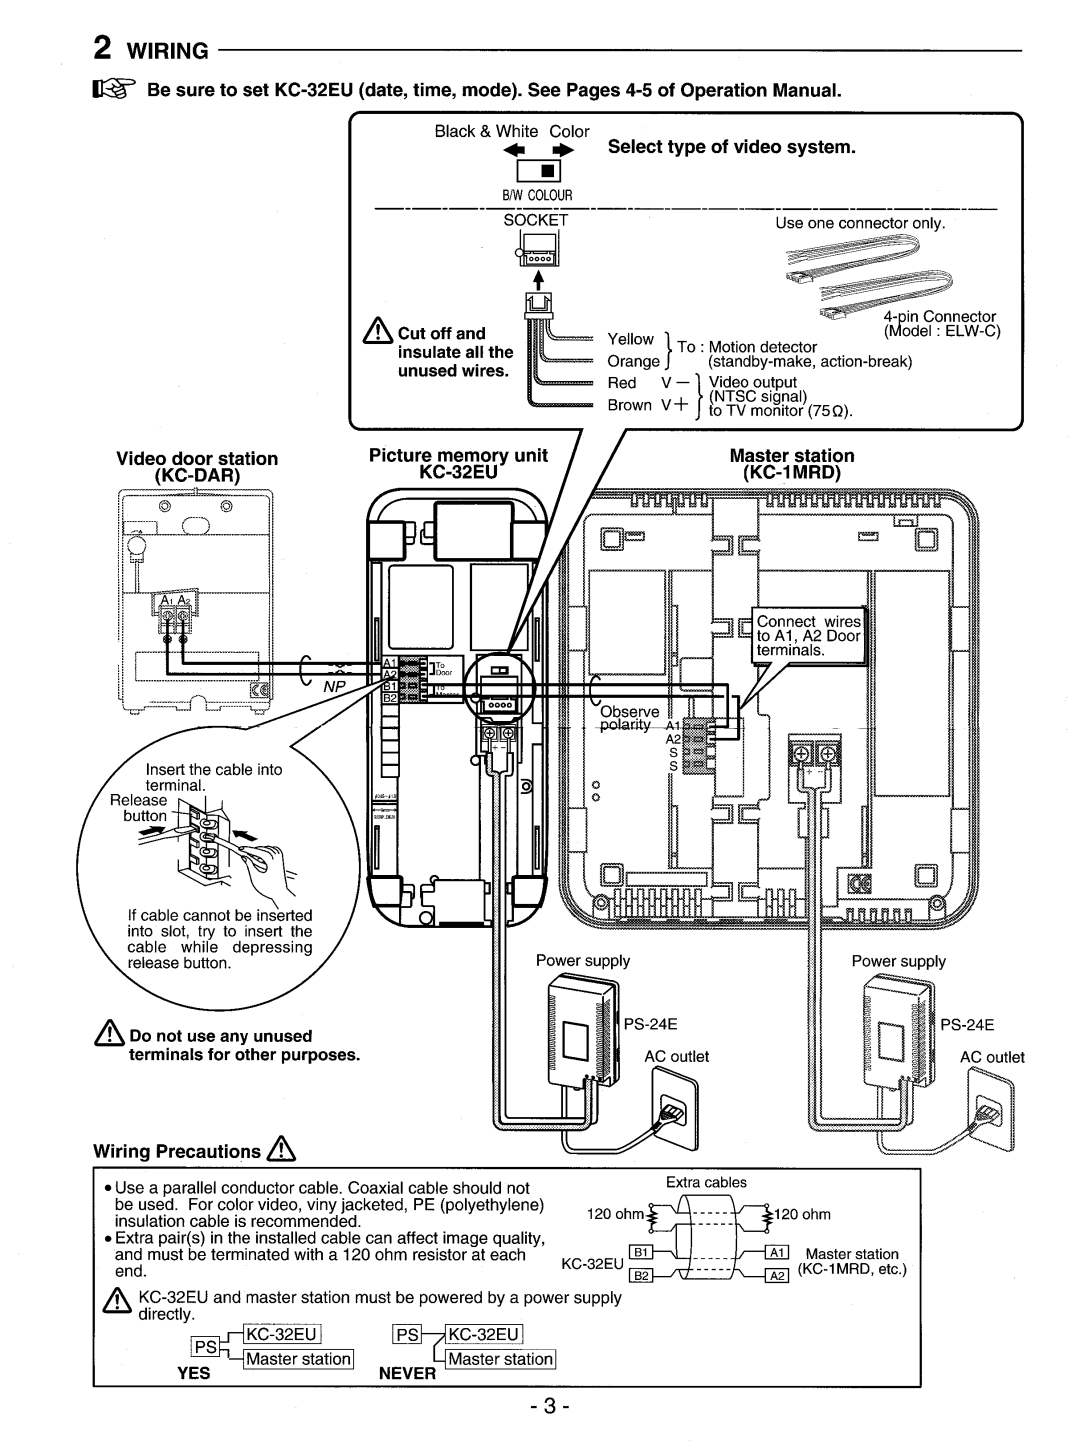 Aiphone KC-32EU manual 